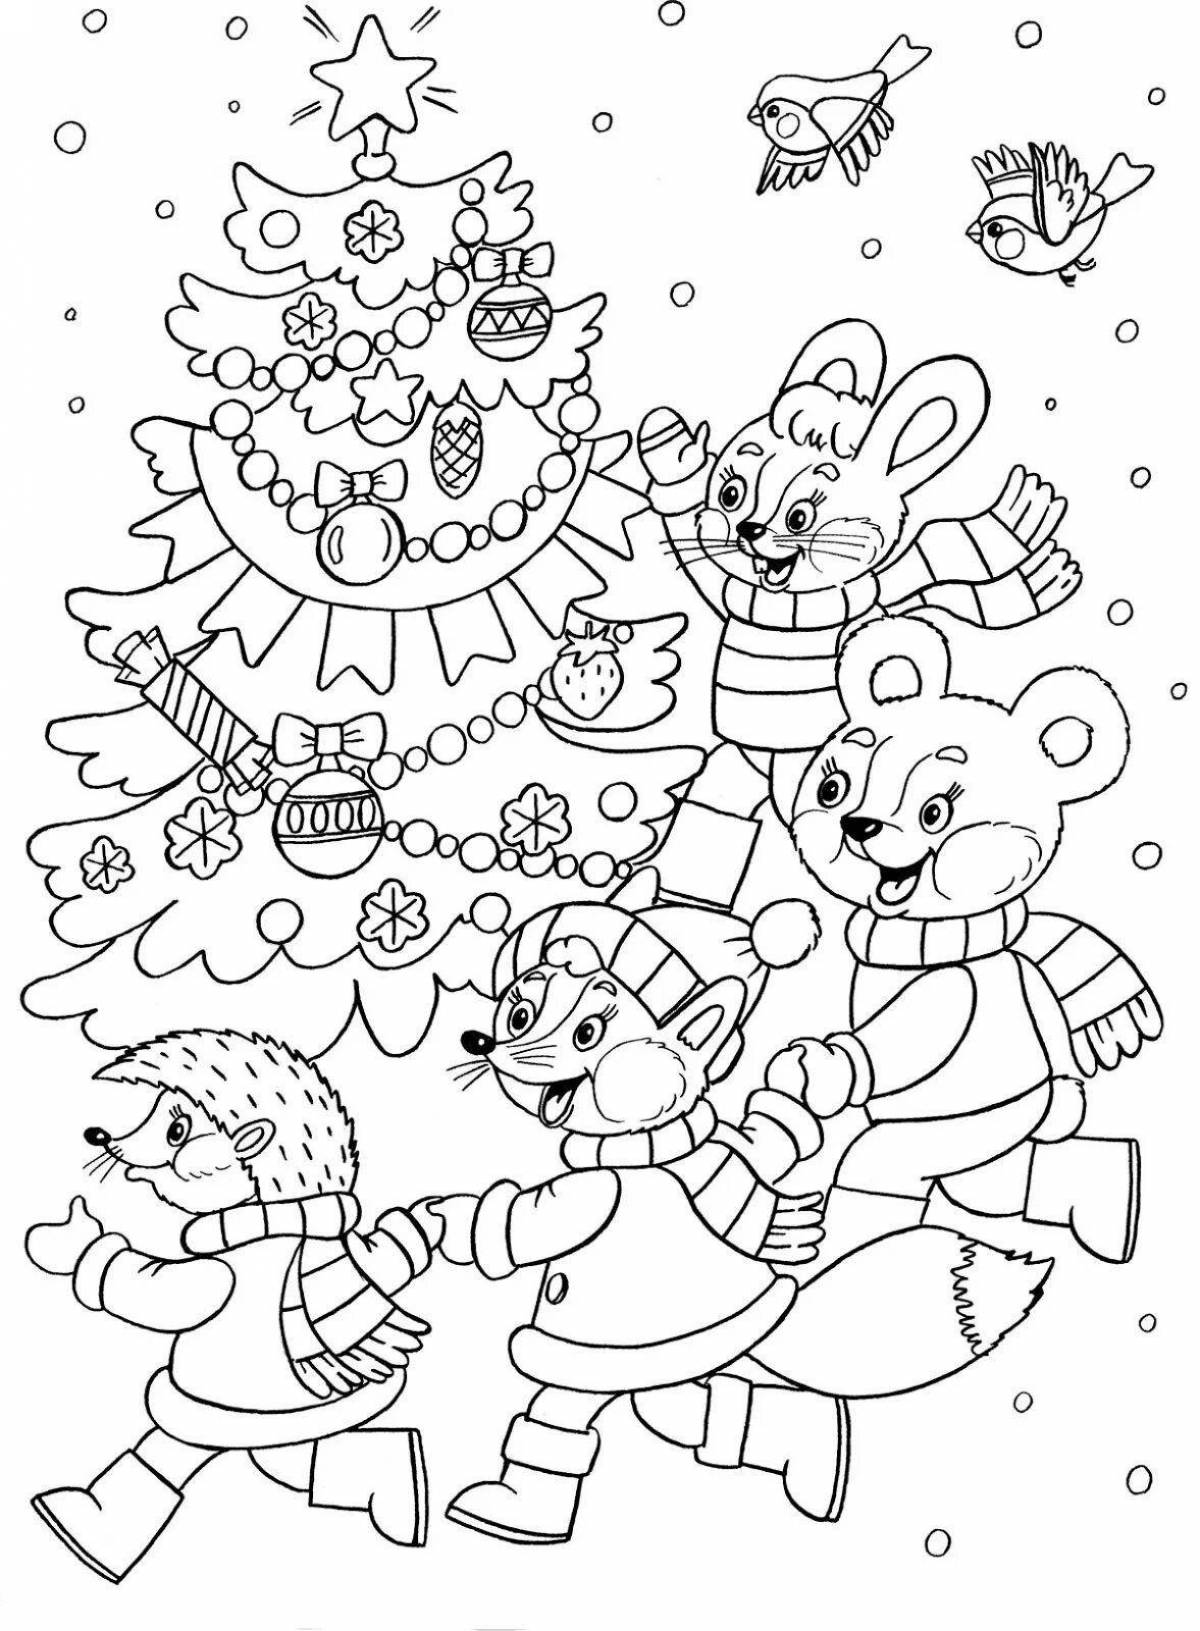 Праздничная новогодняя раскраска для детей